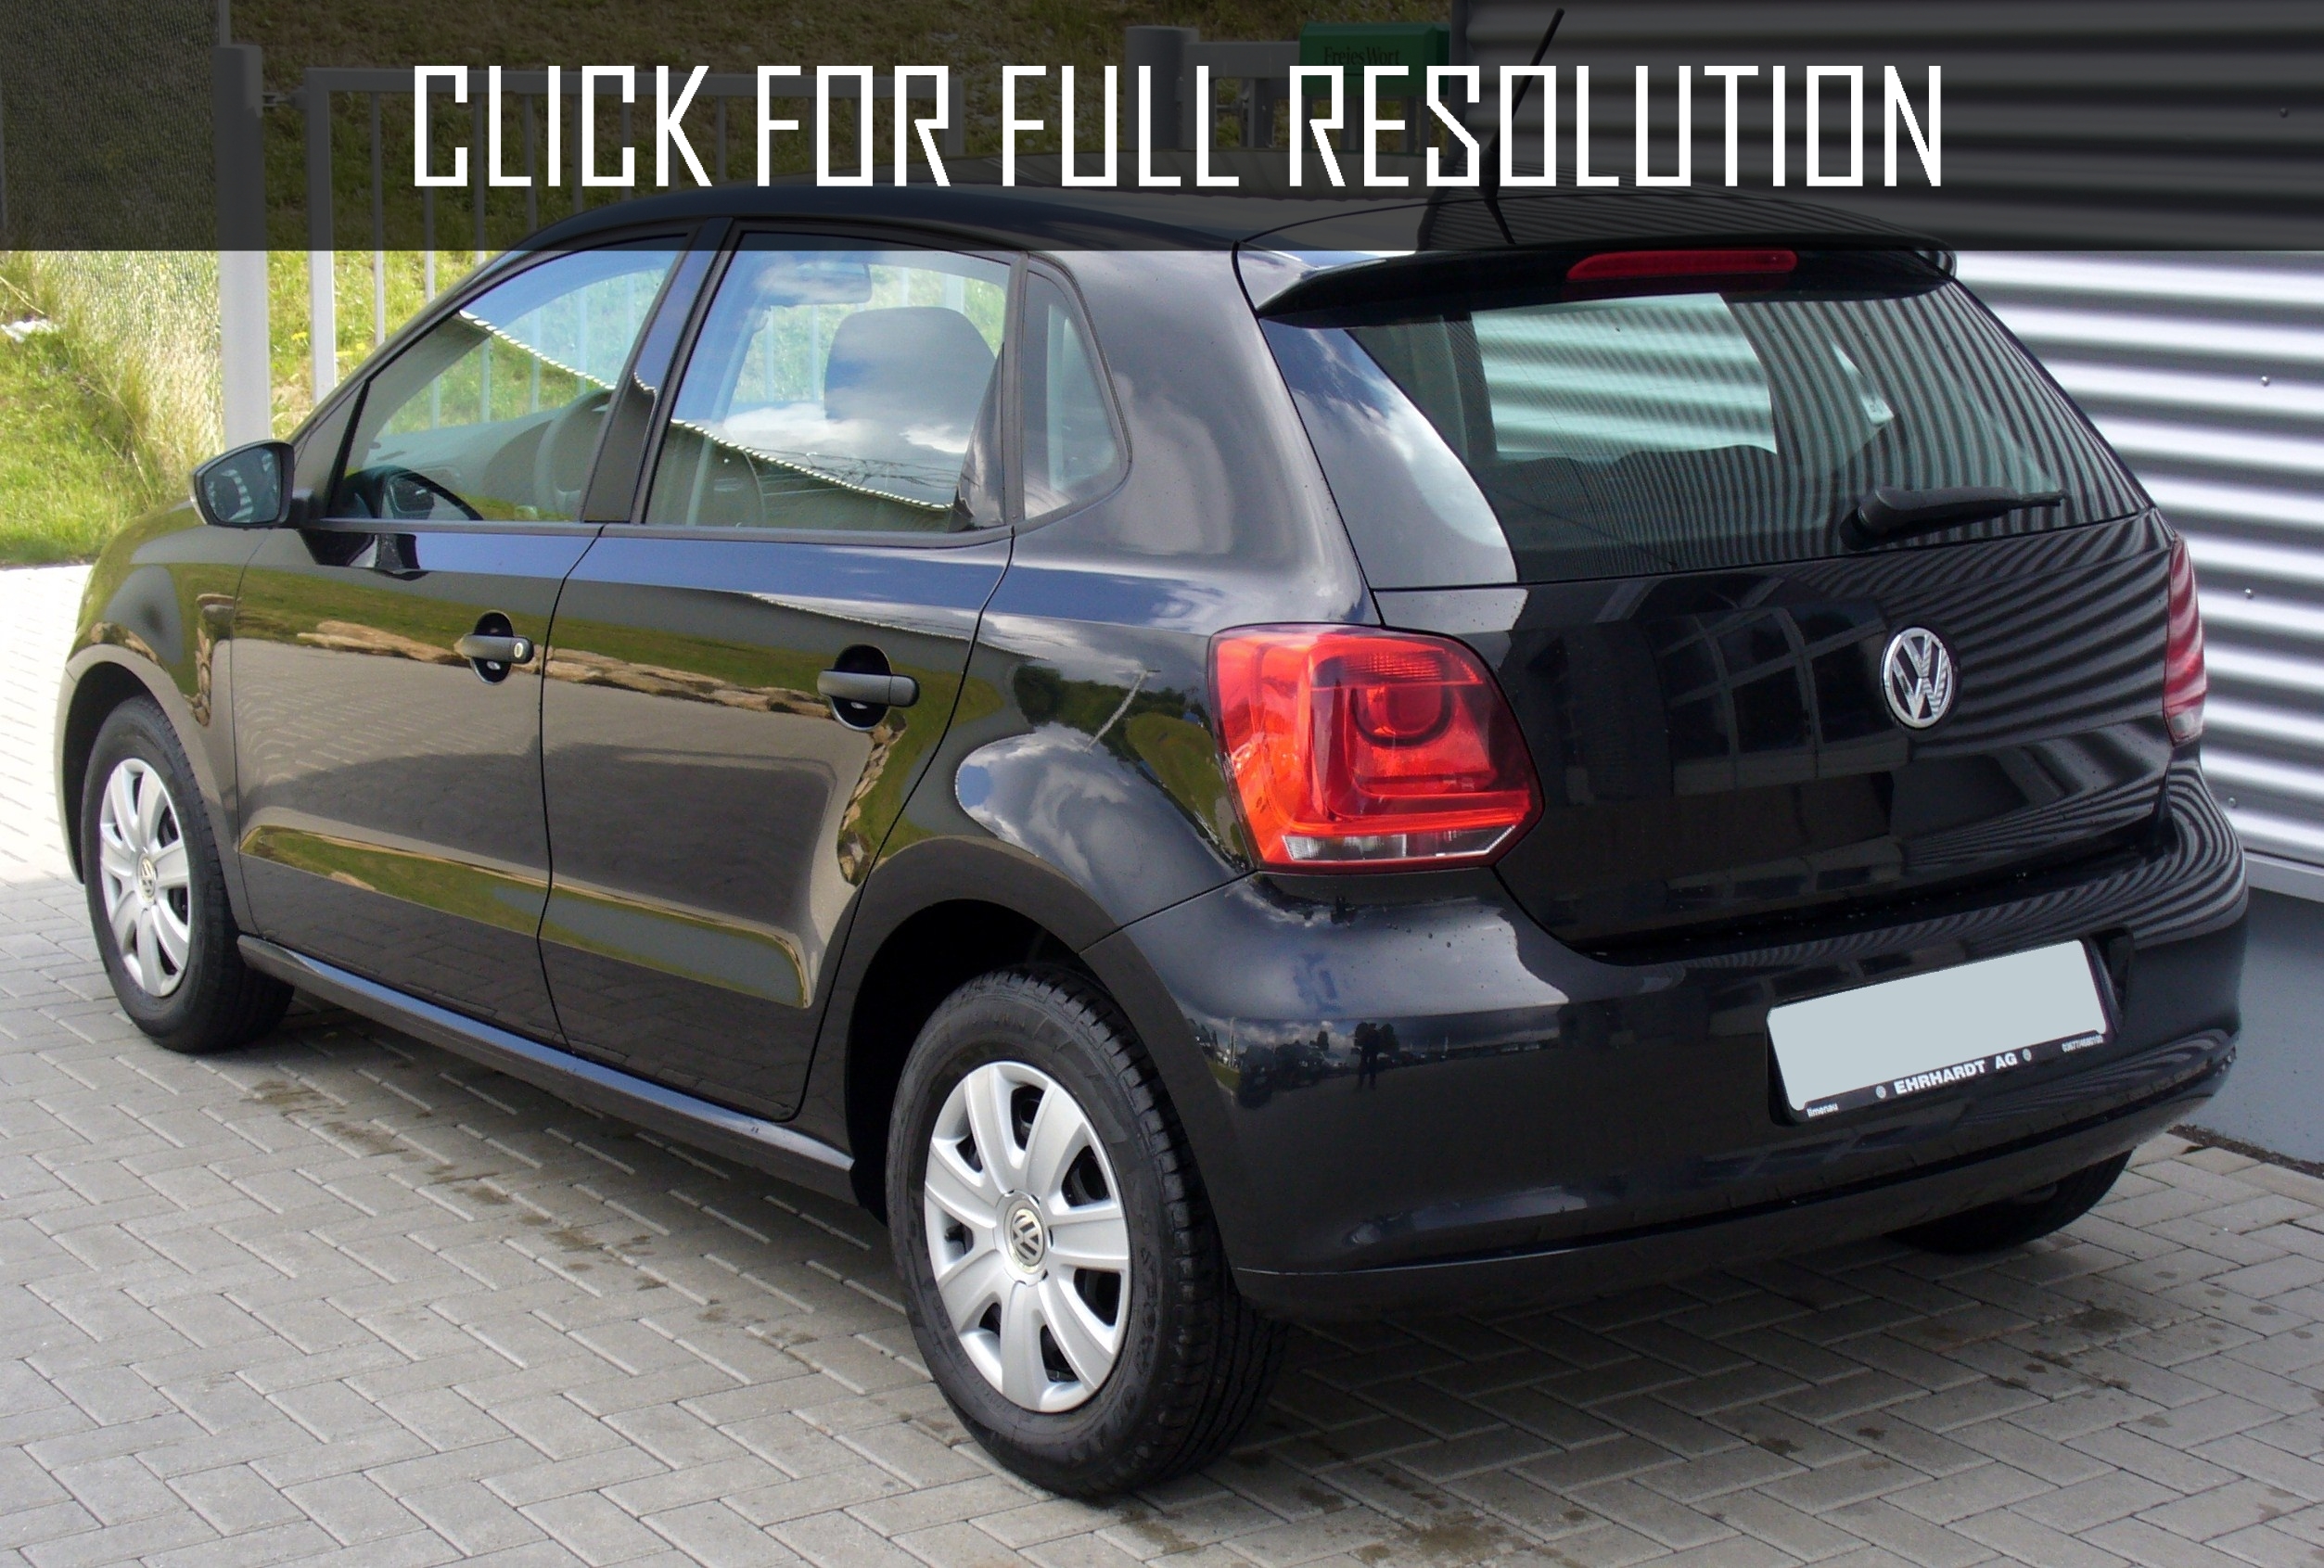 Volkswagen Polo 1.2 Trendline